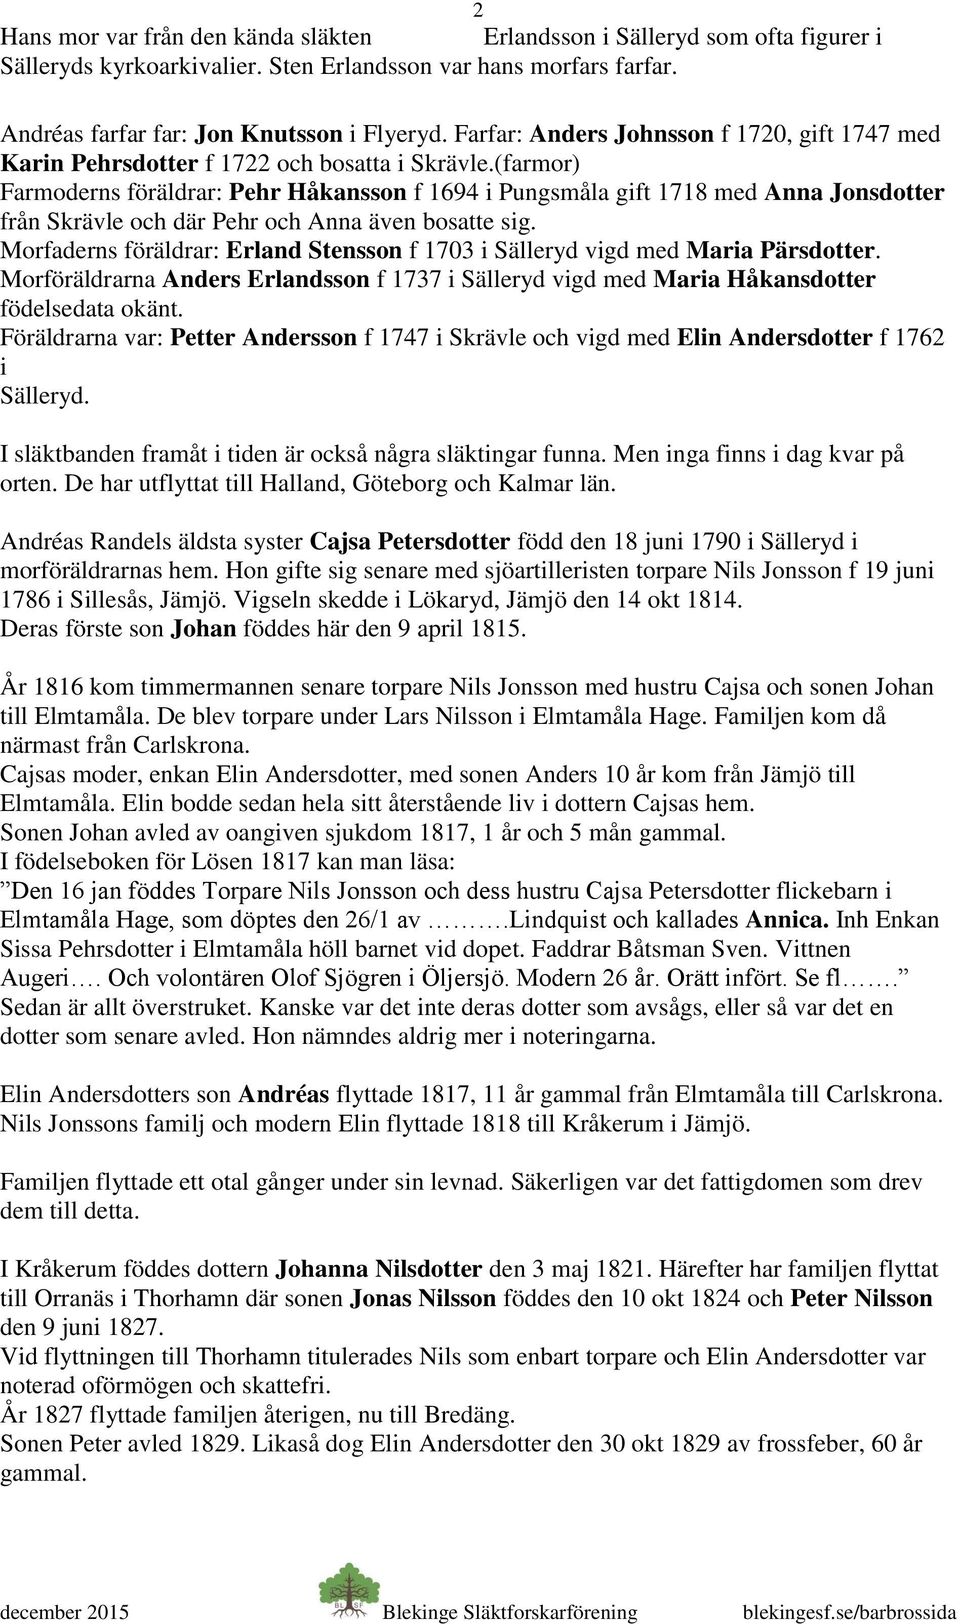 (farmor) Farmoderns föräldrar: Pehr Håkansson f 1694 i Pungsmåla gift 1718 med Anna Jonsdotter från Skrävle och där Pehr och Anna även bosatte sig.